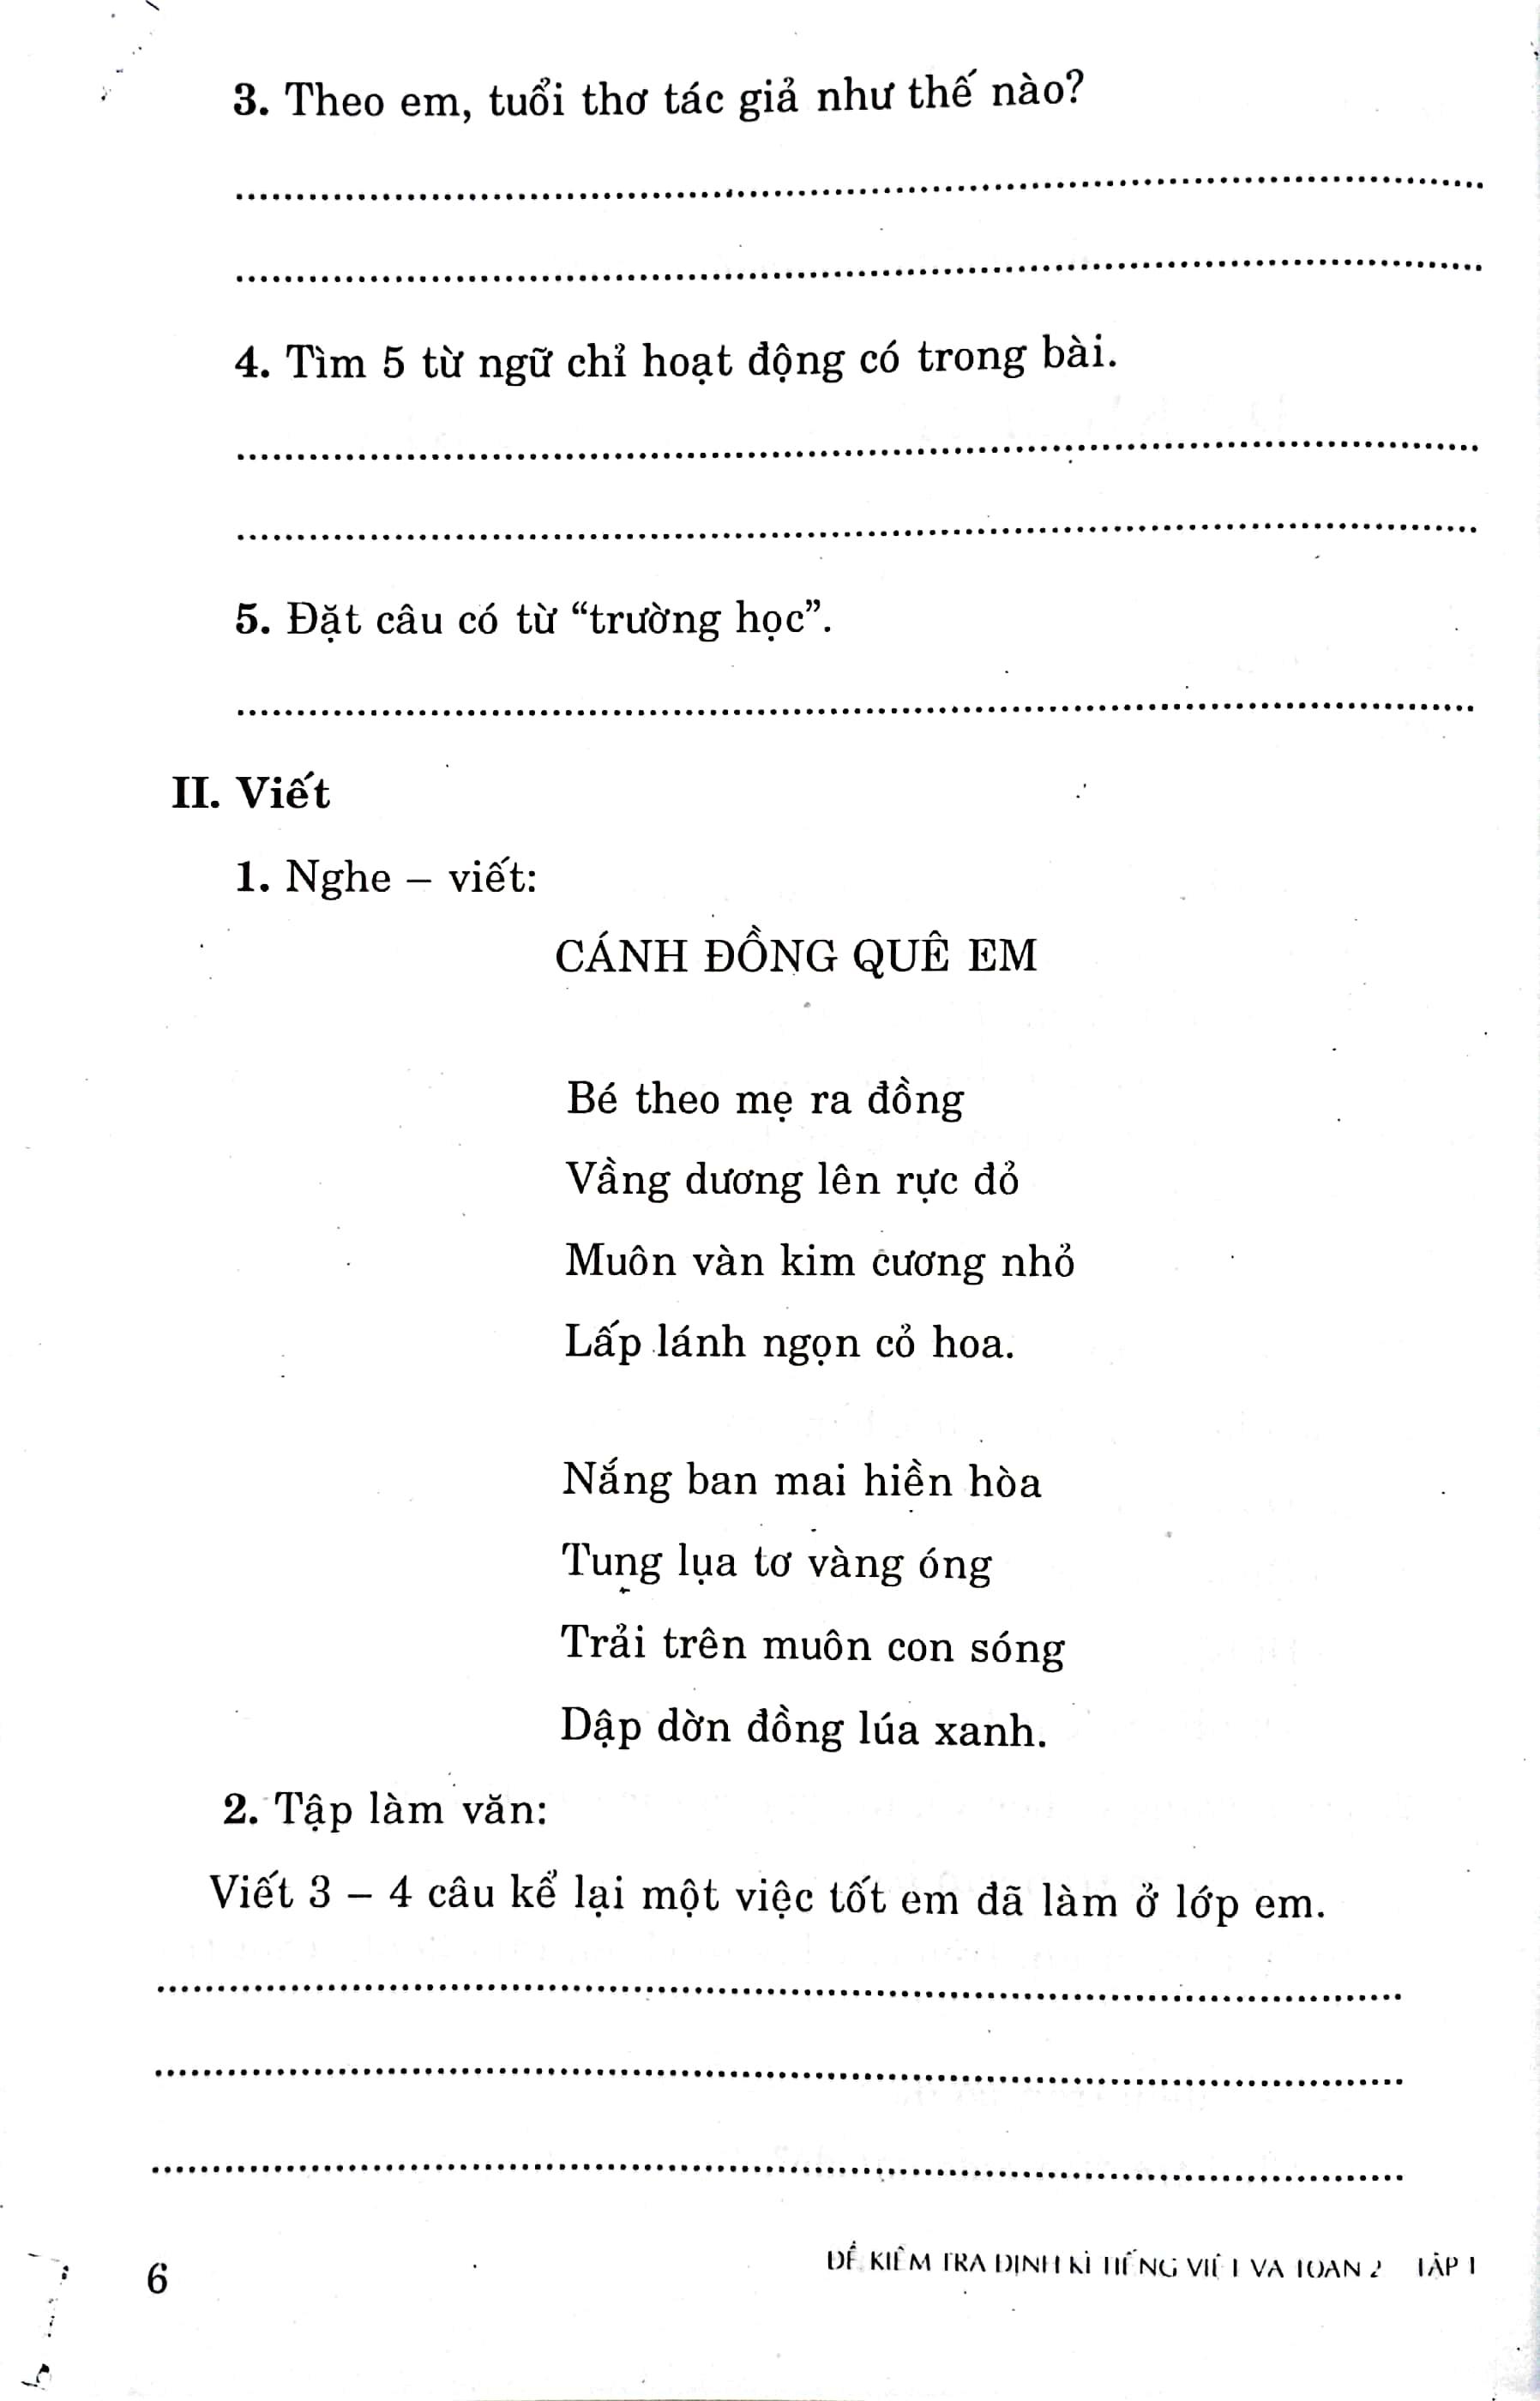 Đề Kiểm Tra Định Kỳ Tiếng Việt Và Toán 2 - Tập Một